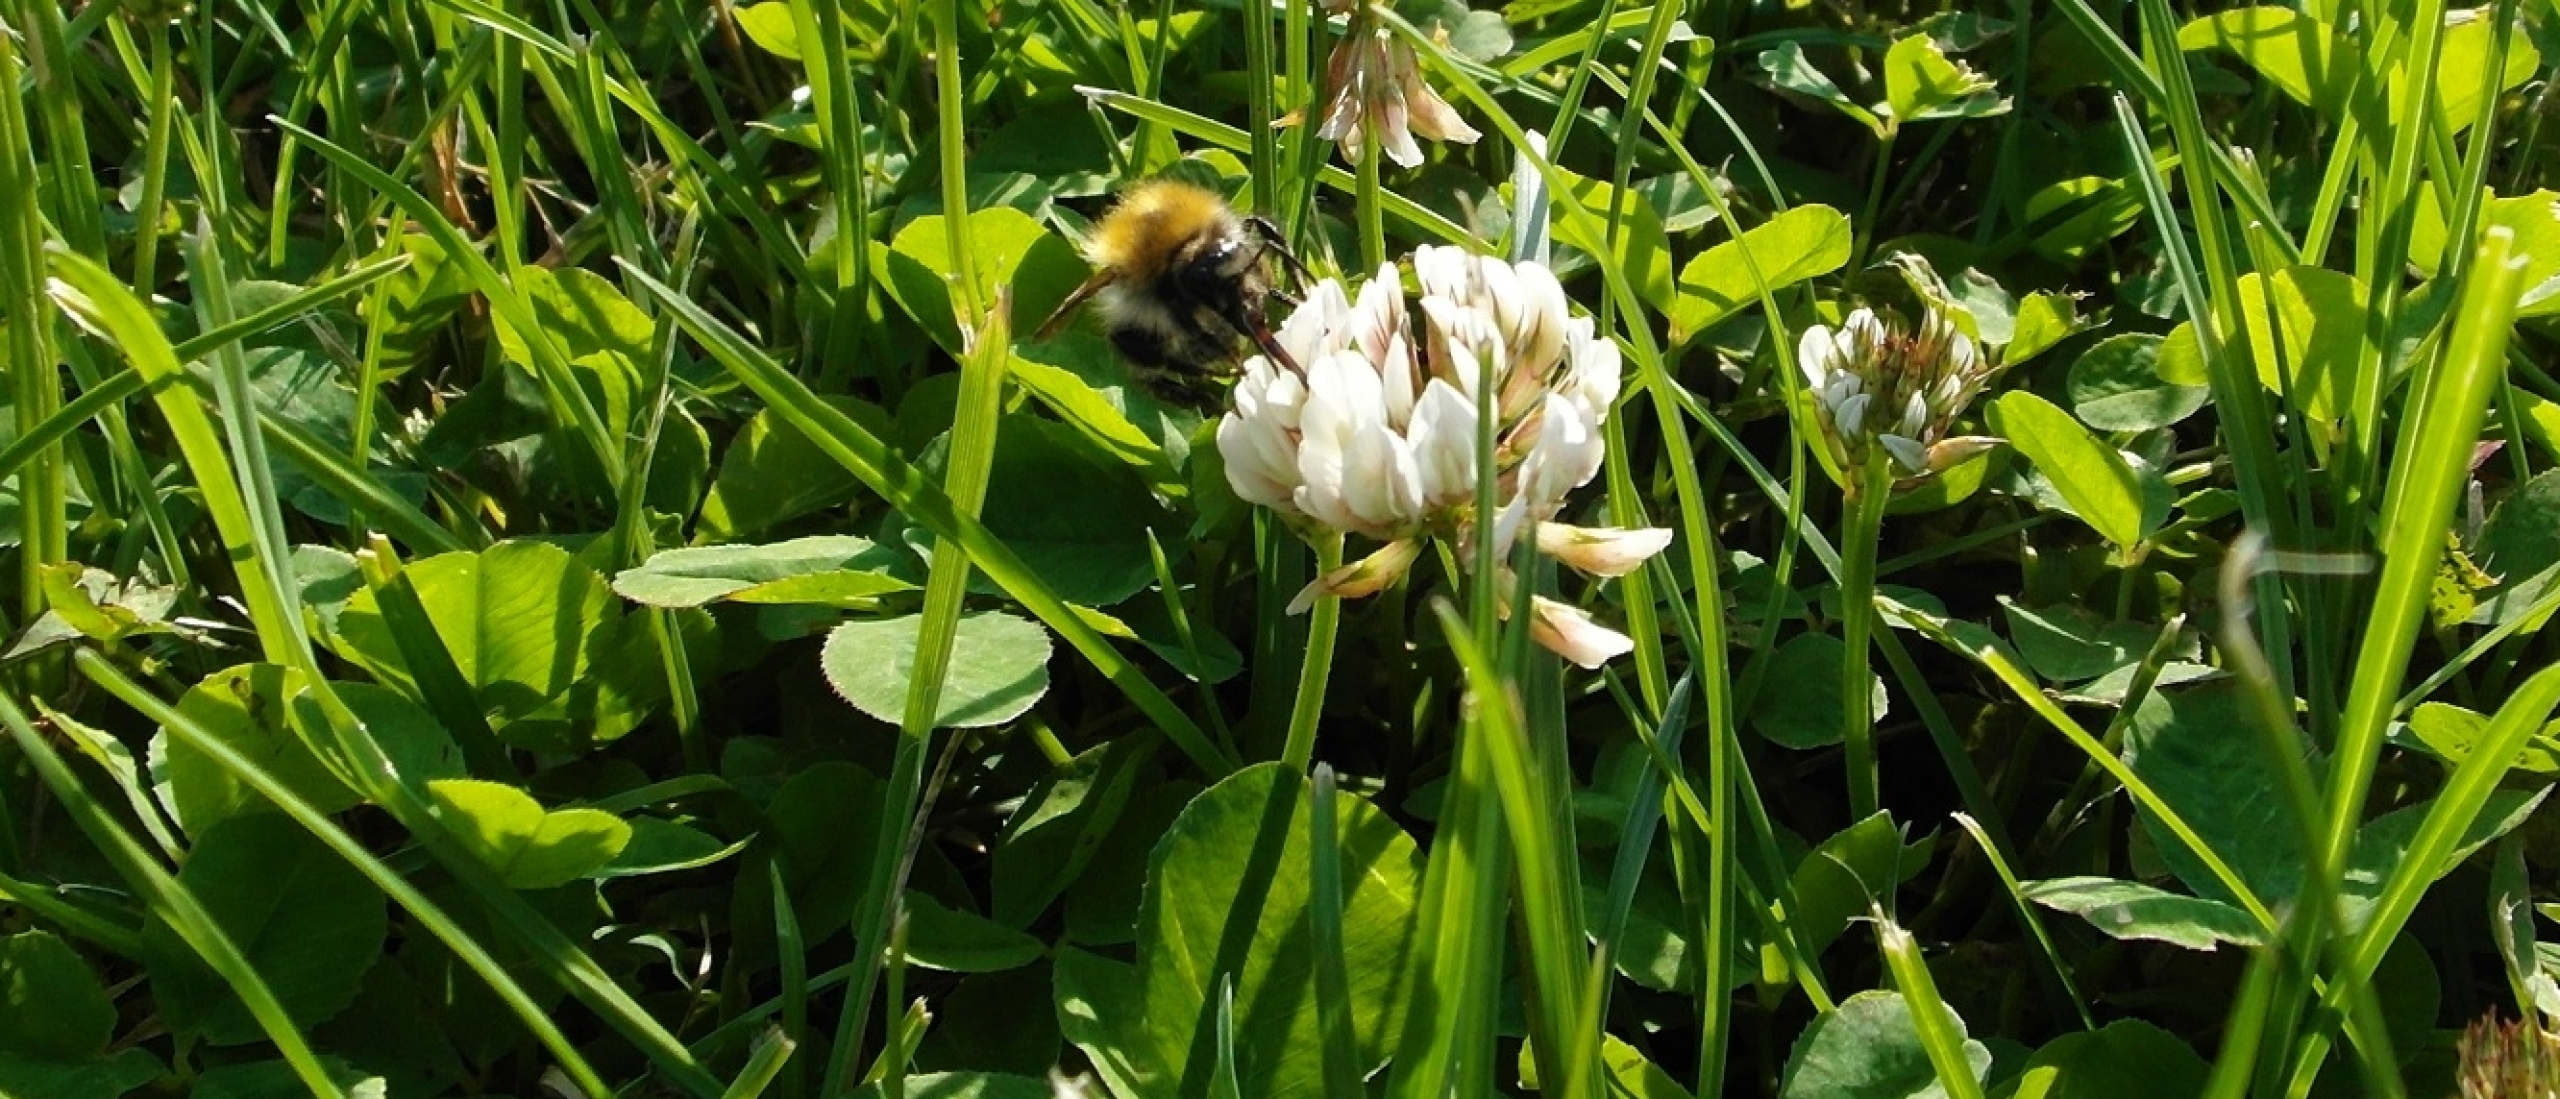 Luchtvervuiling maakt bloemengeur minder aantrekkelijk voor bijen en vlinders